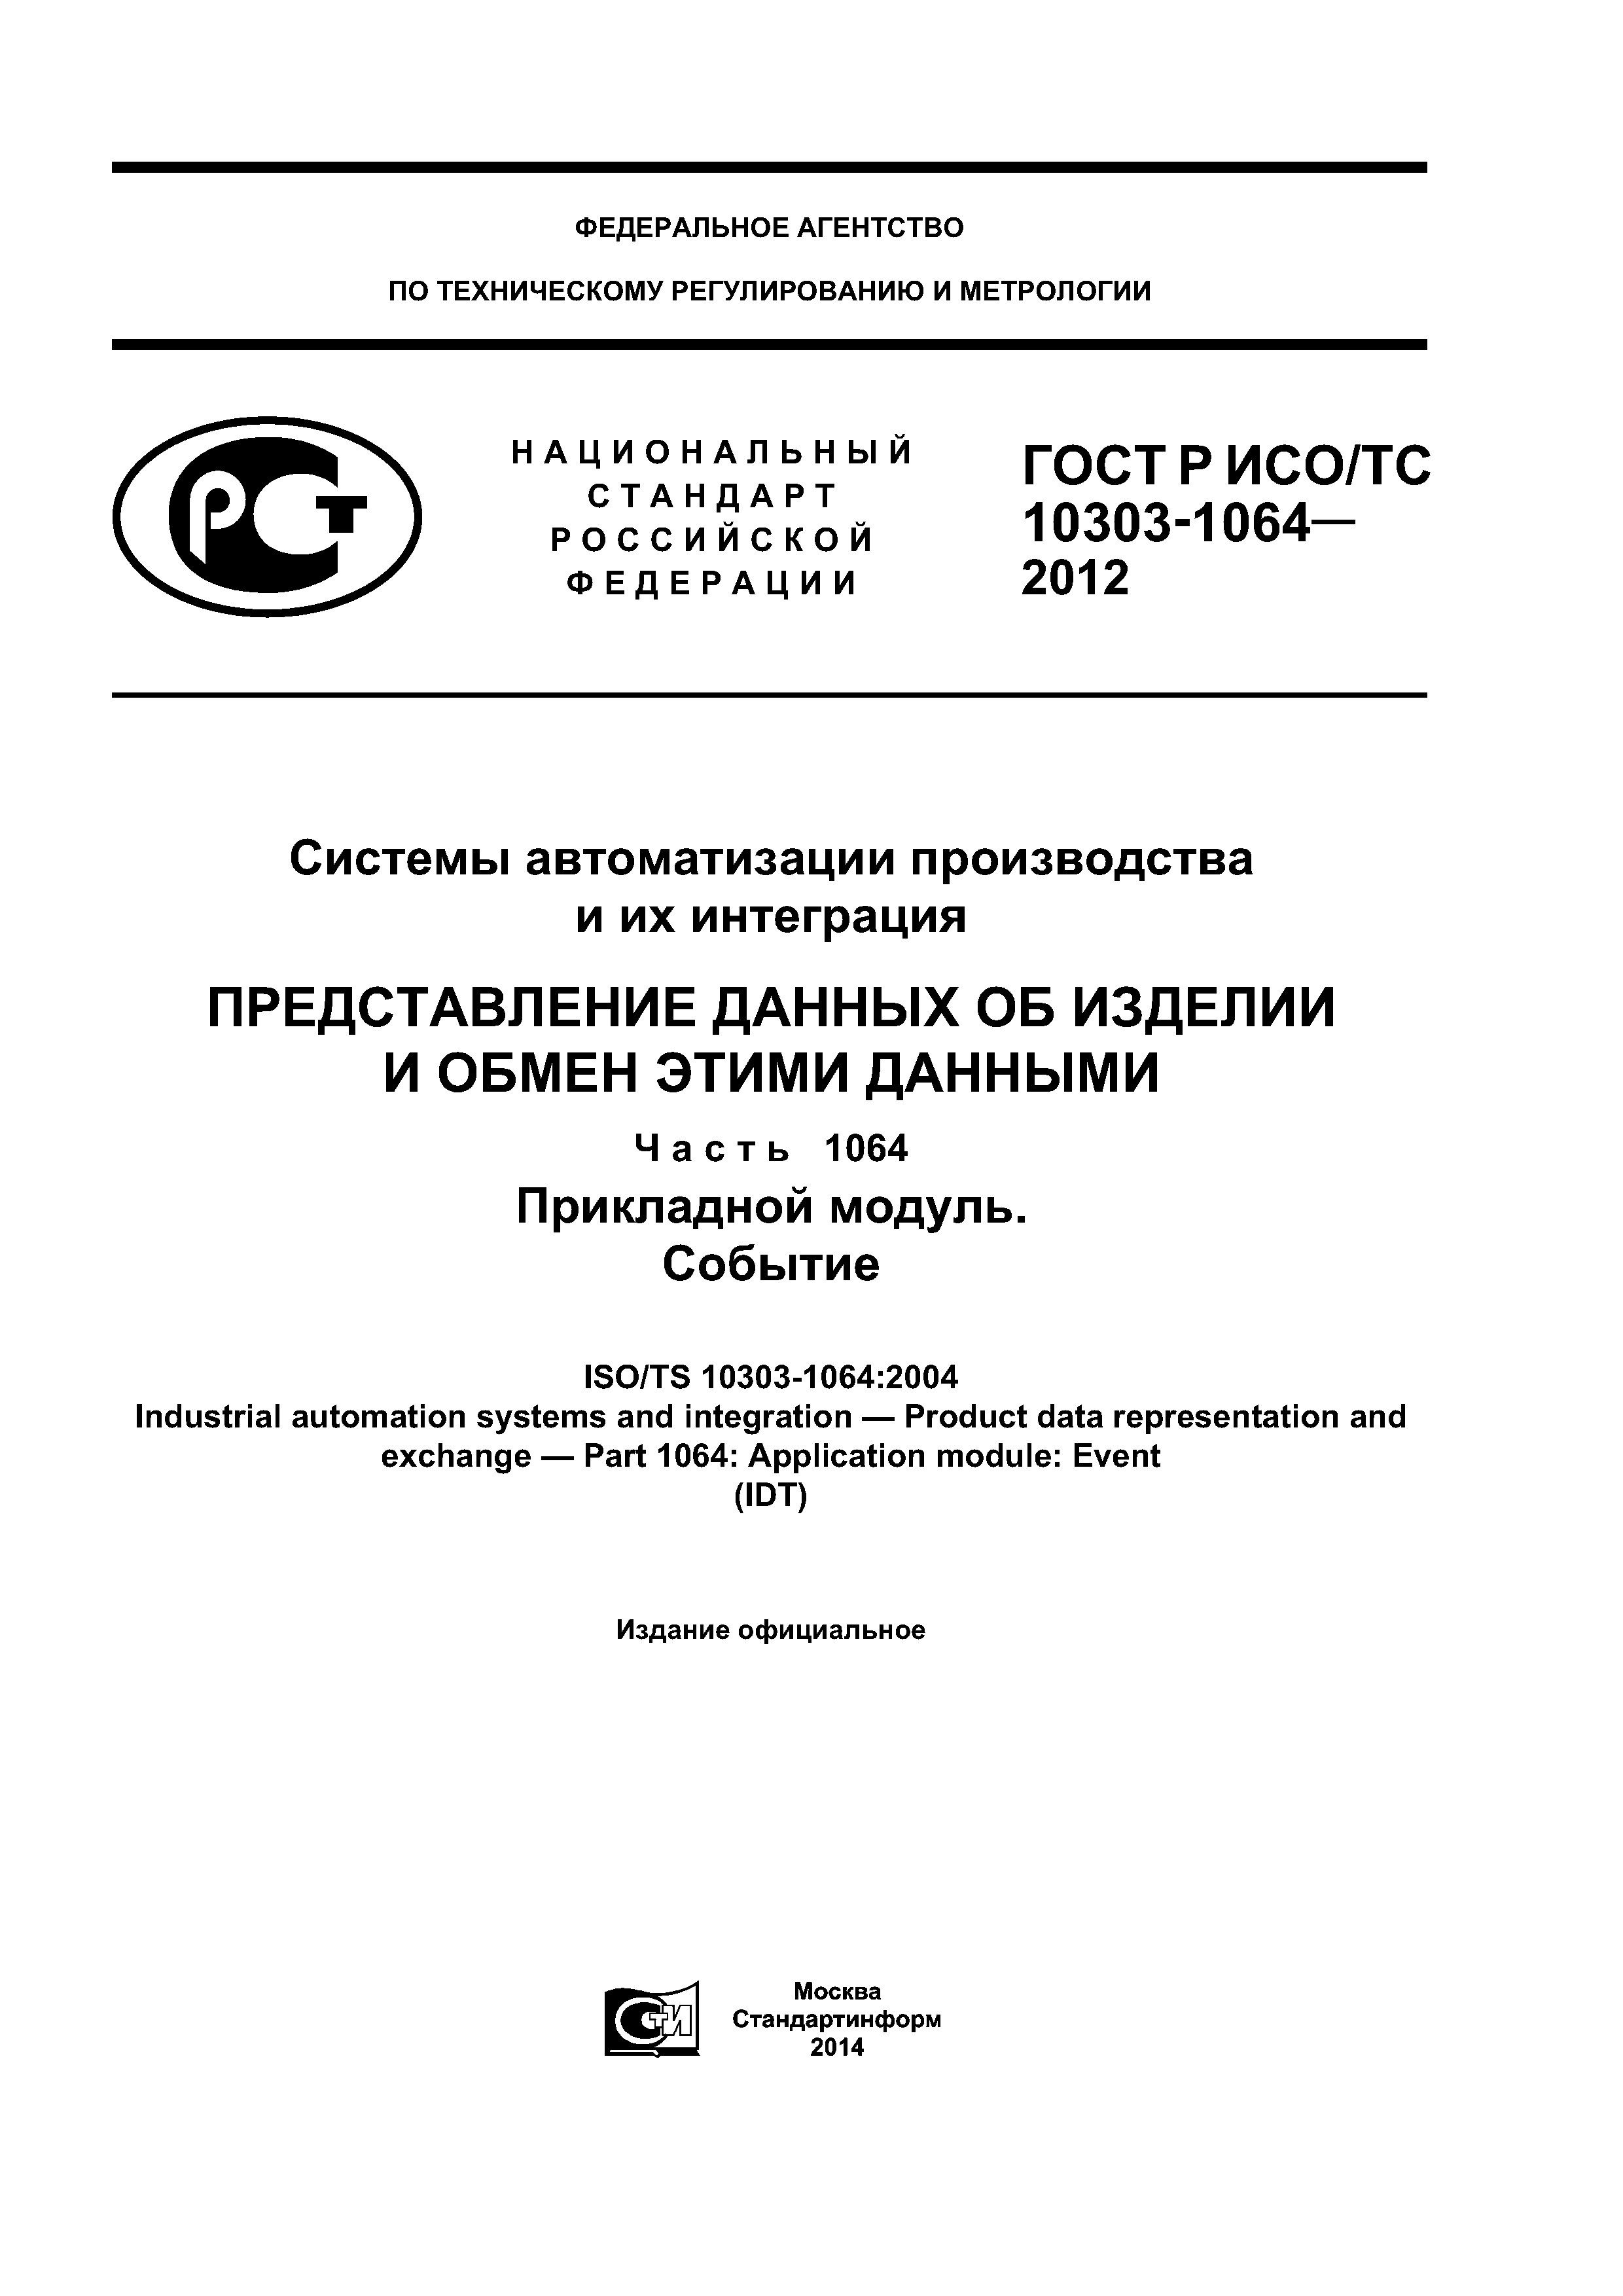 ГОСТ Р ИСО/ТС 10303-1064-2012